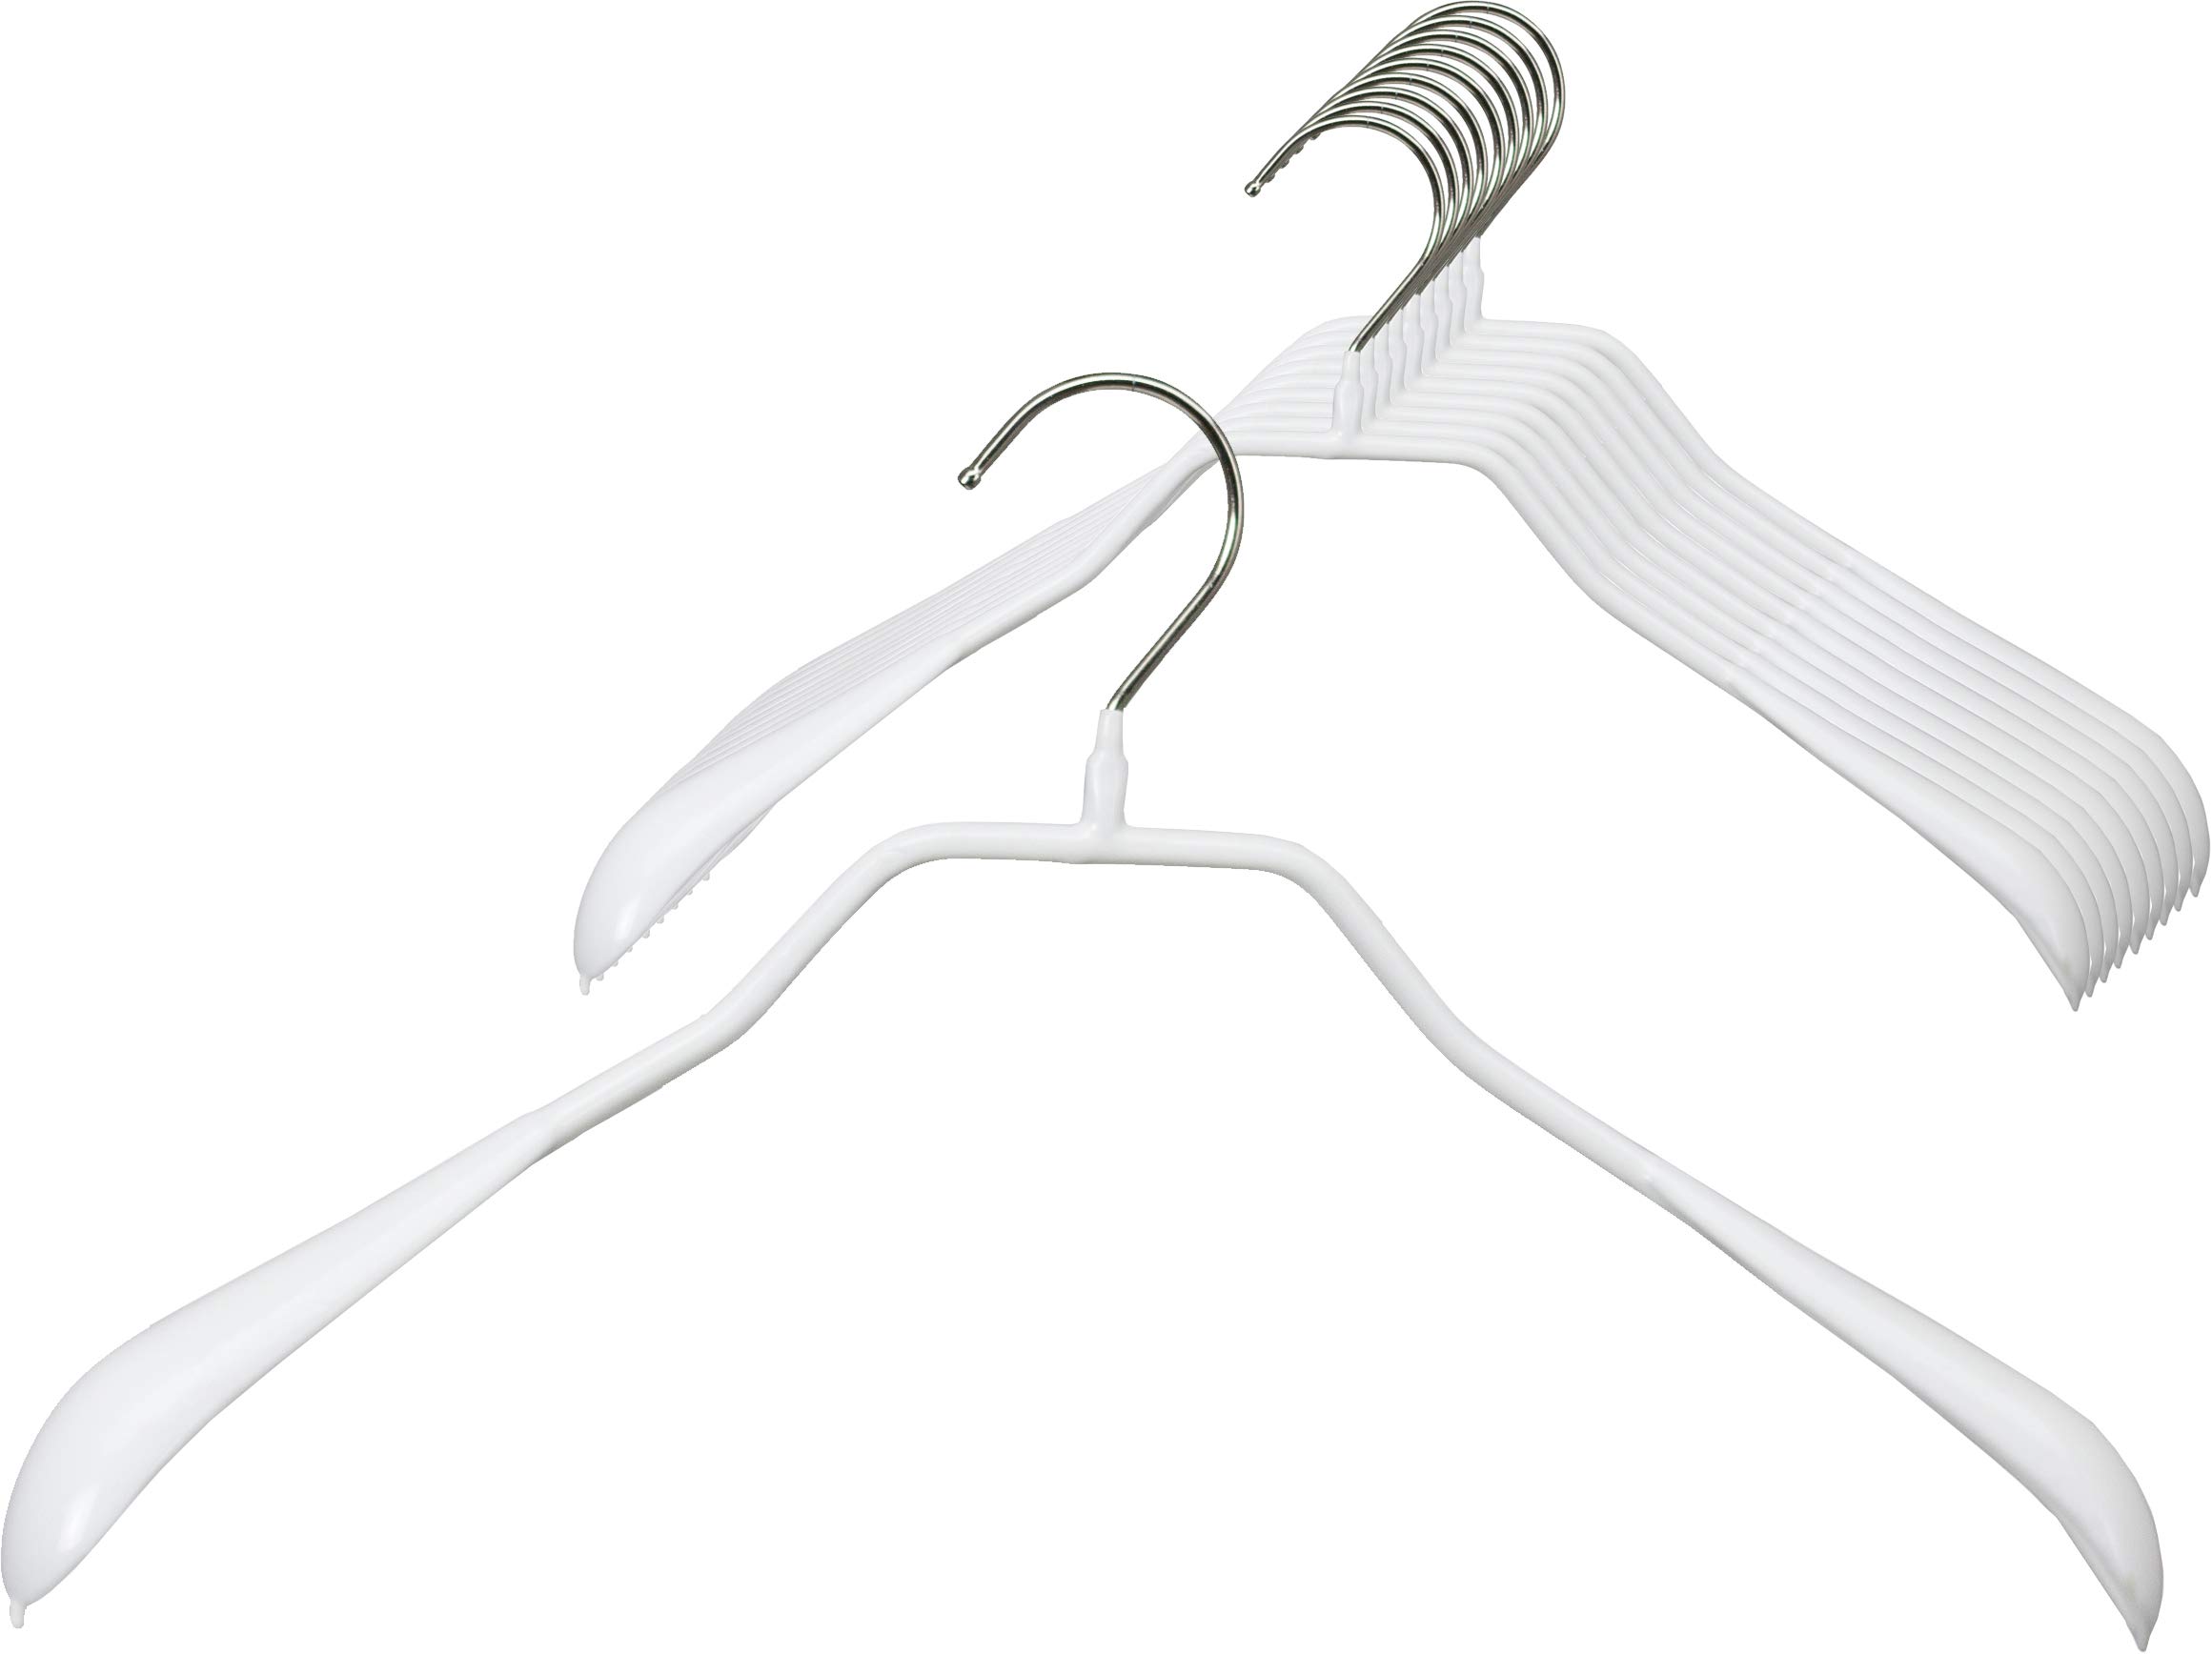 MAWA Kleiderbügel, 10 Stück, körpergeformte Metallbügel für Jacken, Mäntel, Blazer und Jacketts, 360° drehbarer Haken, hochwertige Antirutsch-Beschichtung, 42 cm breit, Weiß